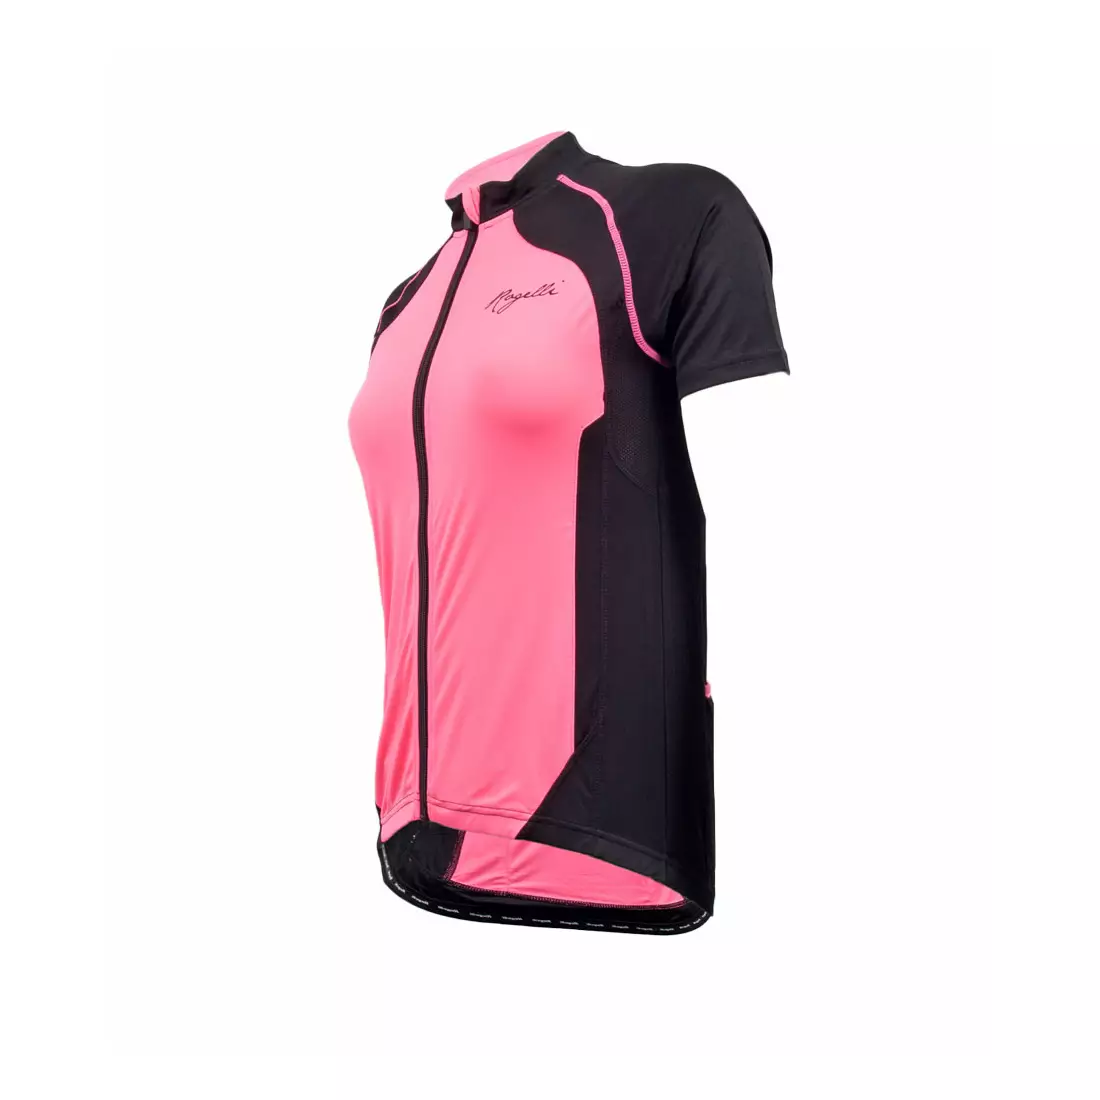 ROGELLI BICE - dámský cyklistický dres, černo-růžový